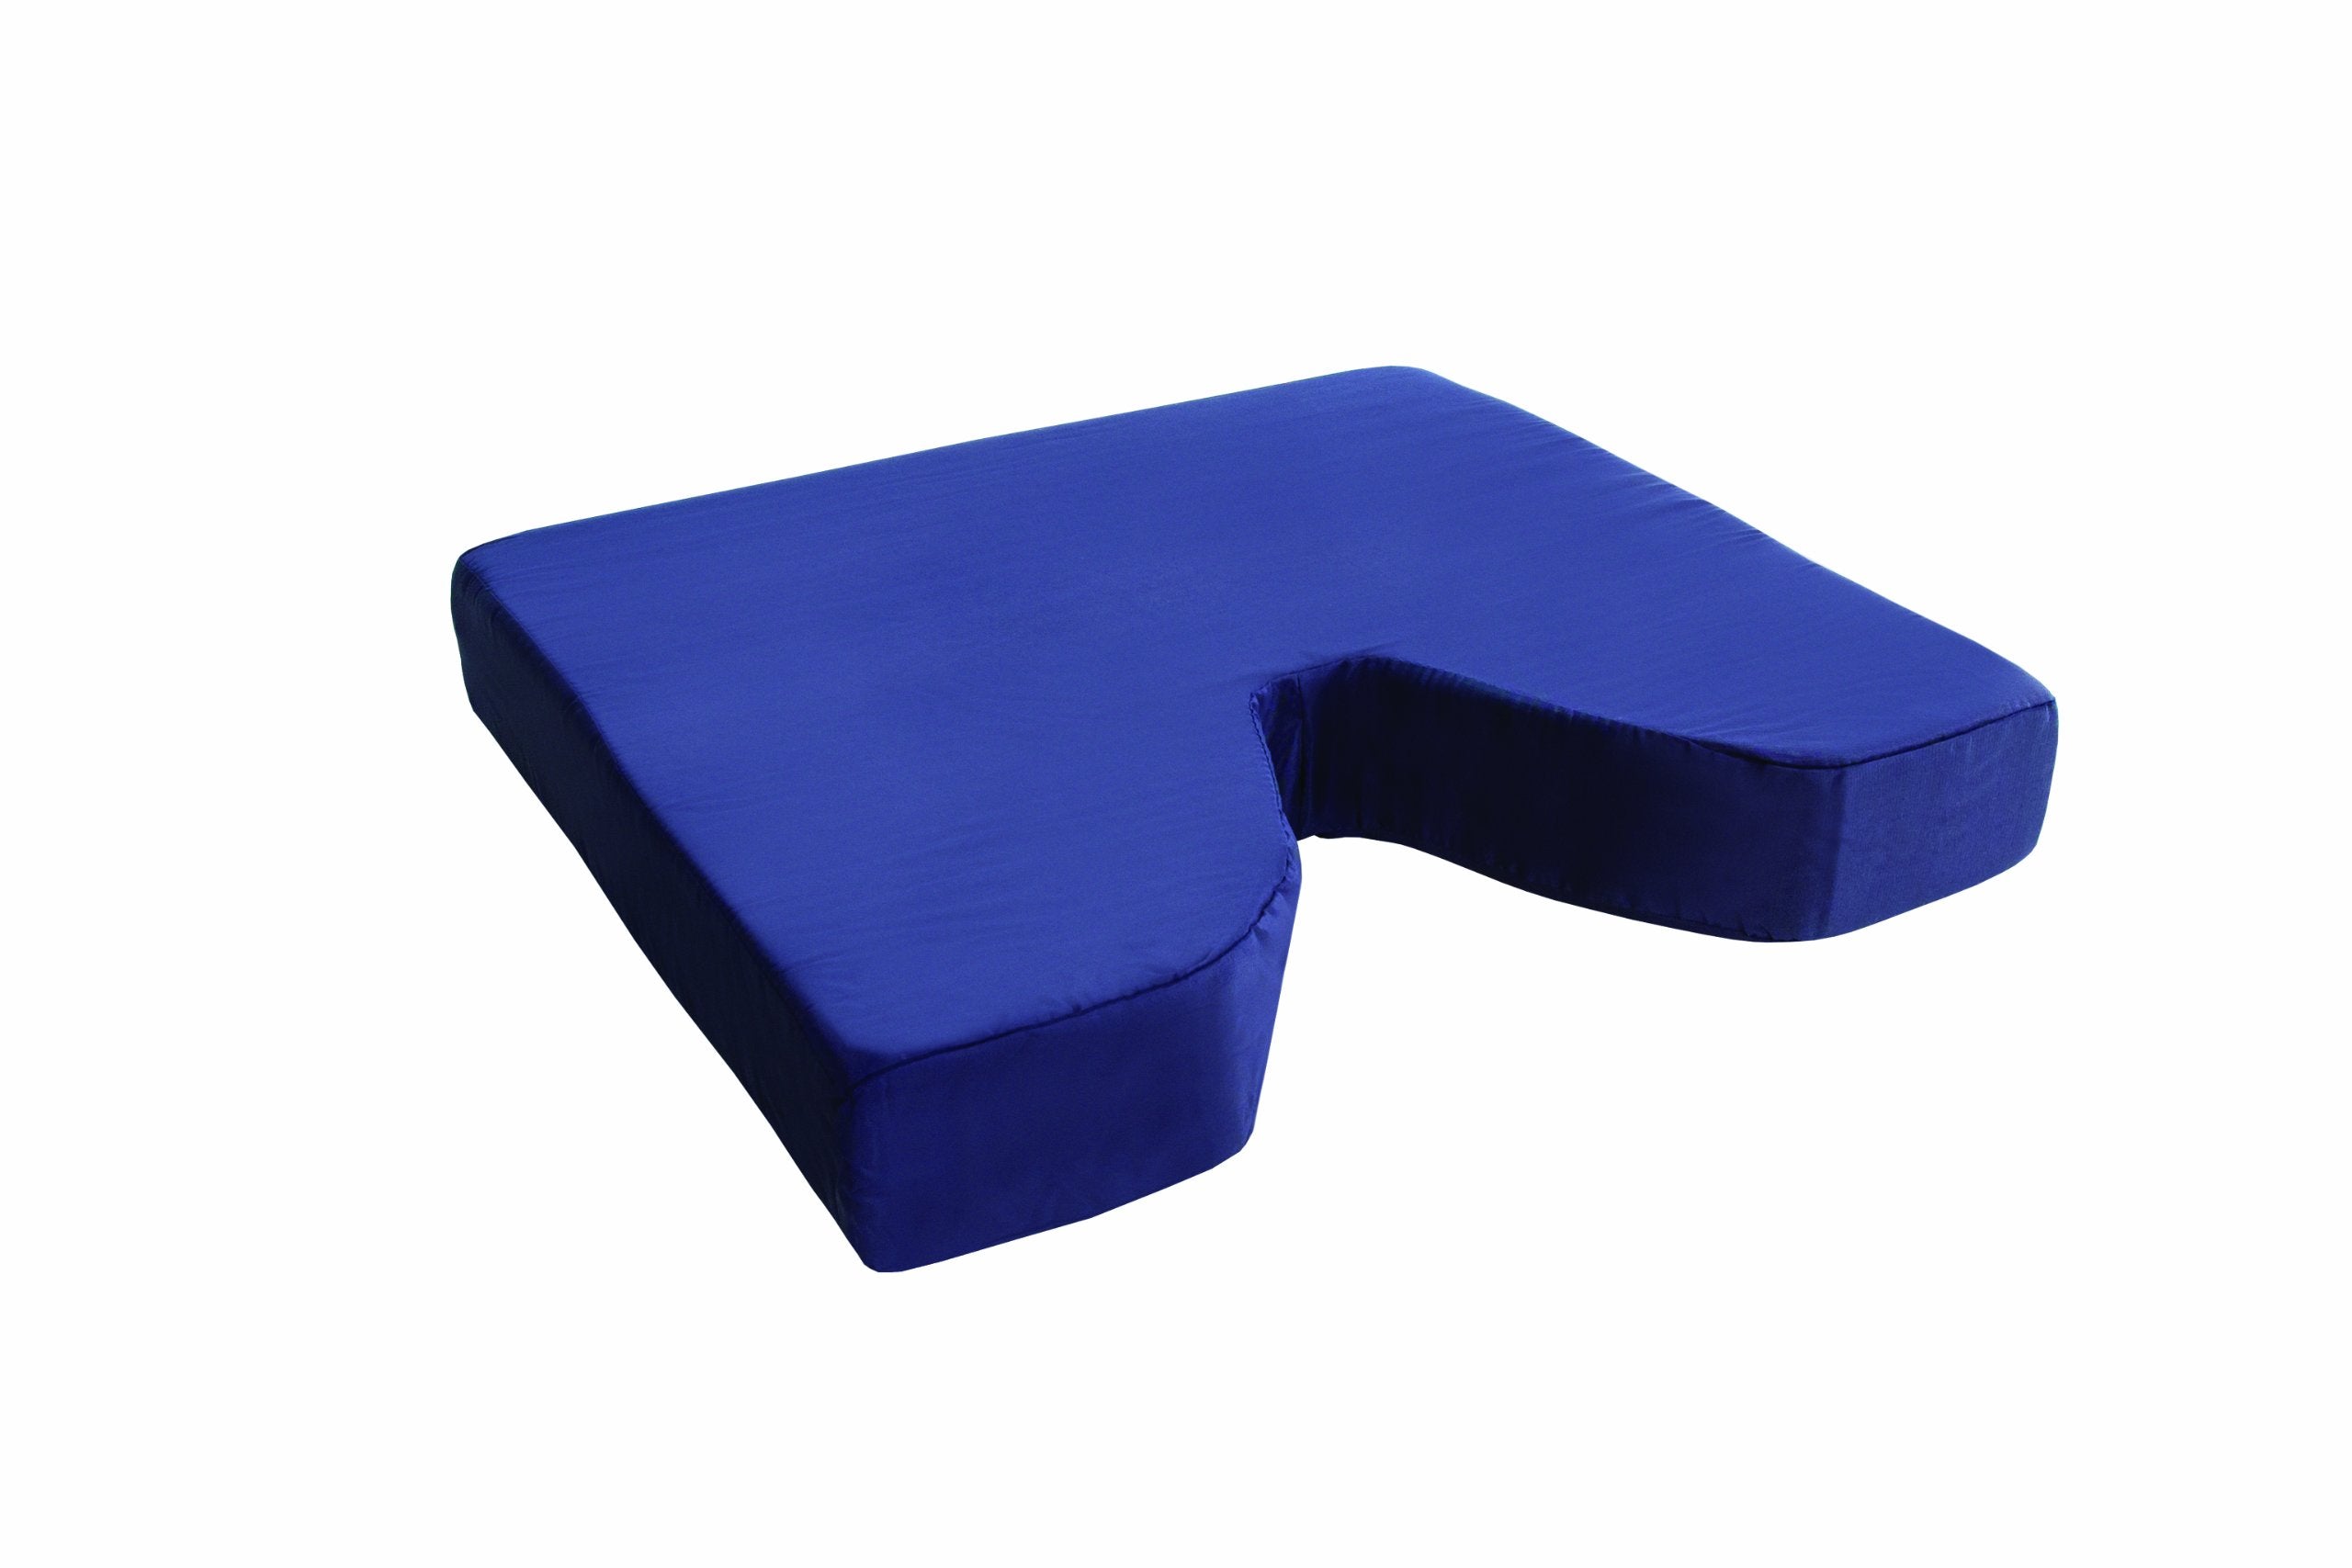 Essential Medical Supply Coccyx Cushion, 18 Inch X 16 inch X 3 Inch